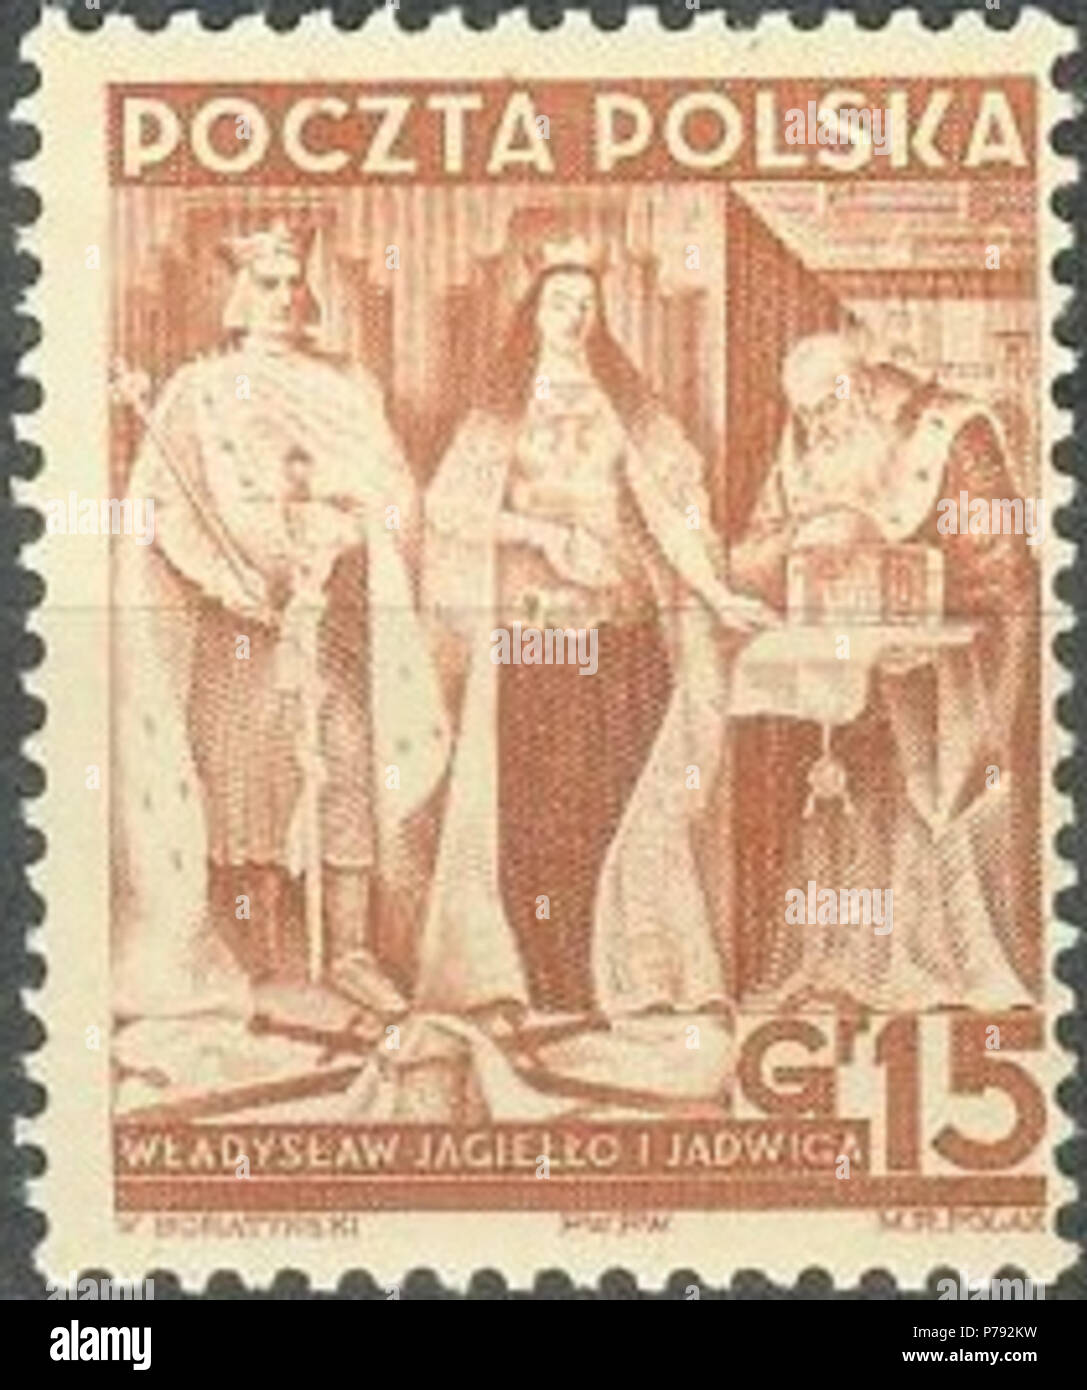 47 Polska 312 - XX rocznica odzyskania niepodległości, Władysław Jagiełło i Jadwiga Stock Photo